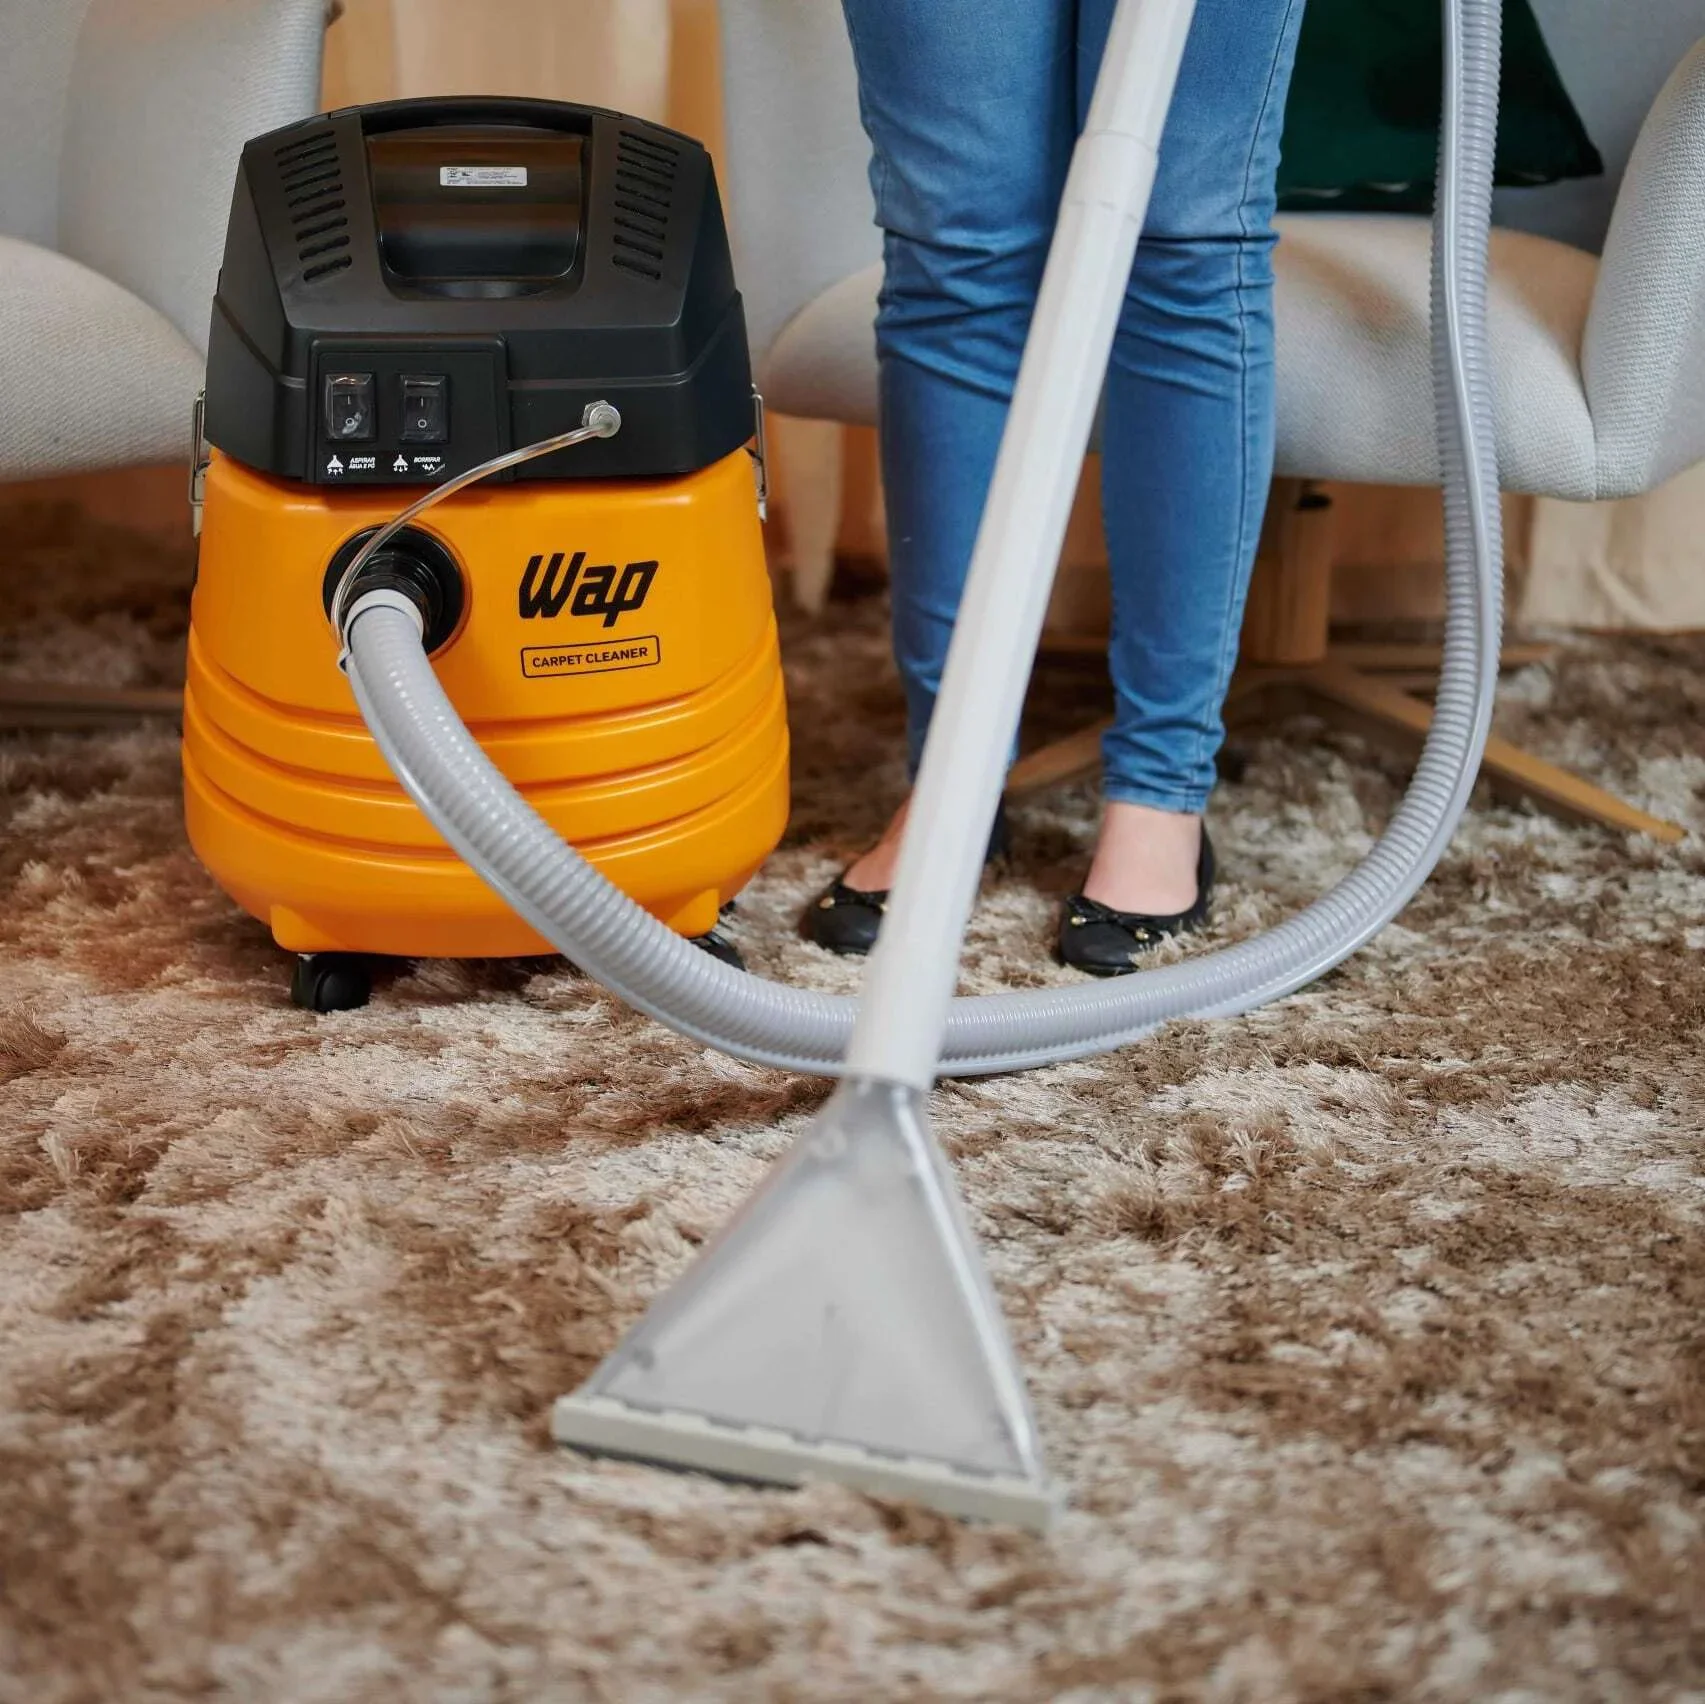 Extratora de Limpeza WAP Carpet Cleaner 1600W Uso Profissional Bocal de Sopro, Borrifa e Aspira 220V Amarelo/Preto - 13